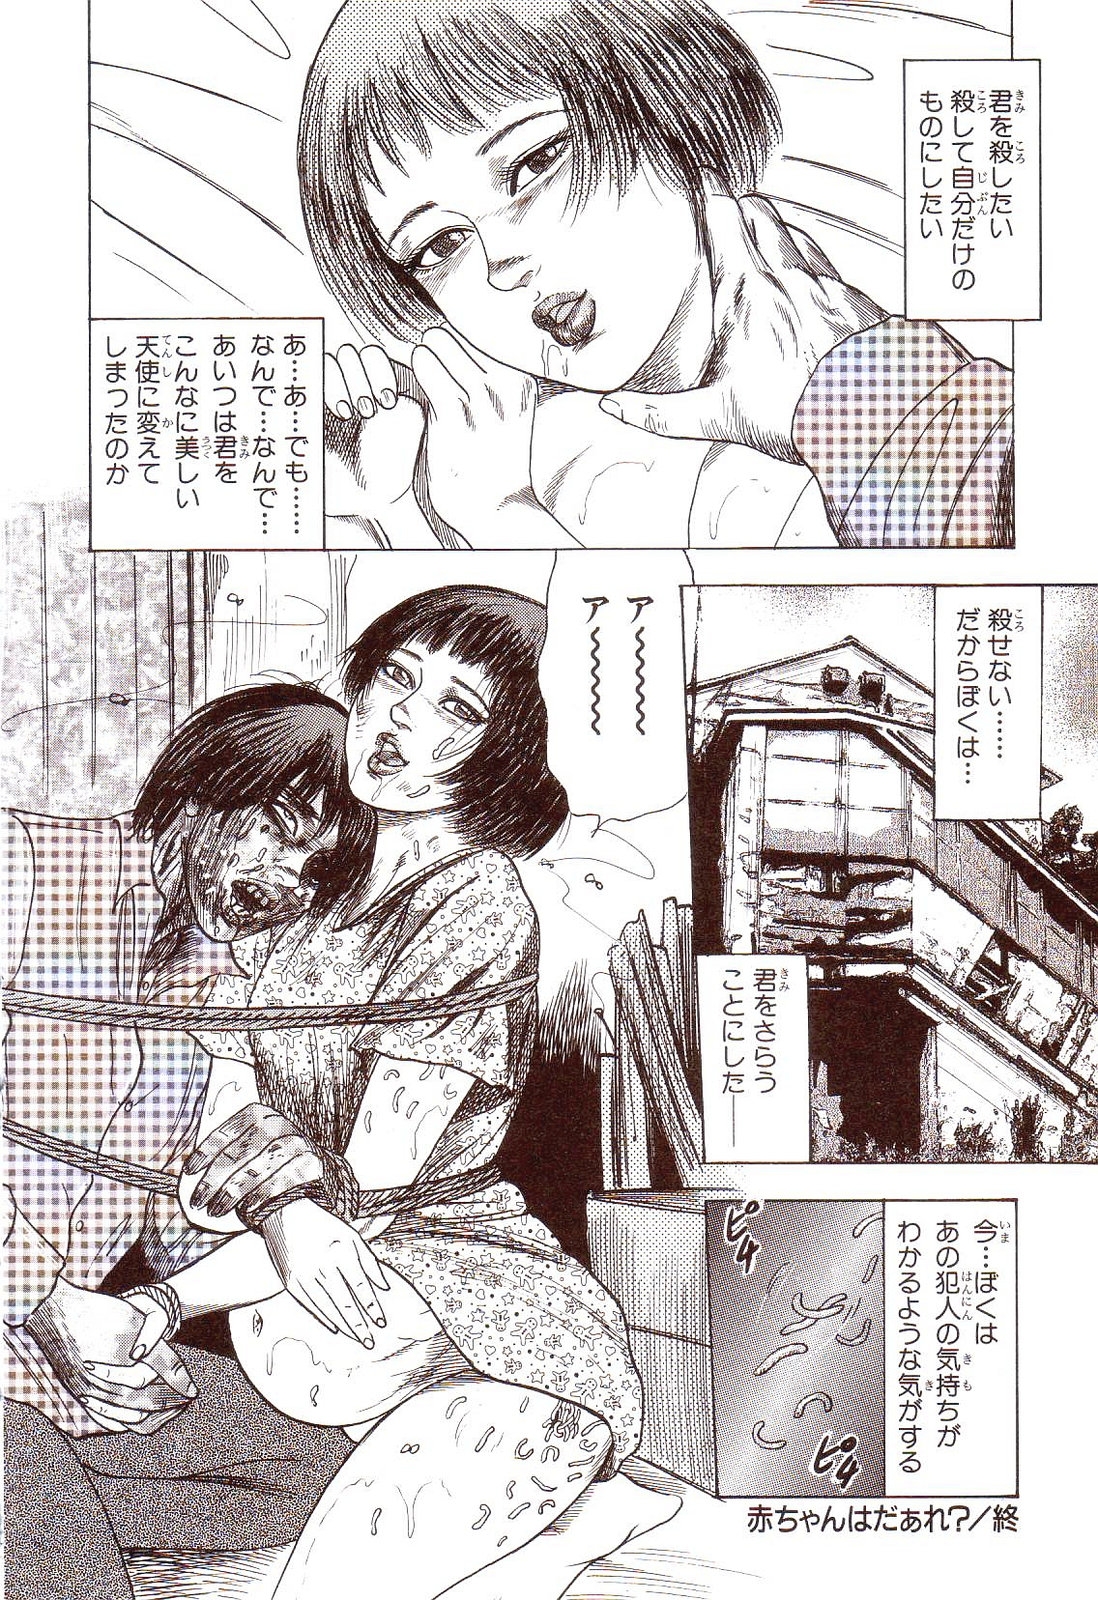 [Sanjou Tomomi] Inu ni Naritai -kyoufu manga shugyoku sakuhinshiyuu- 24